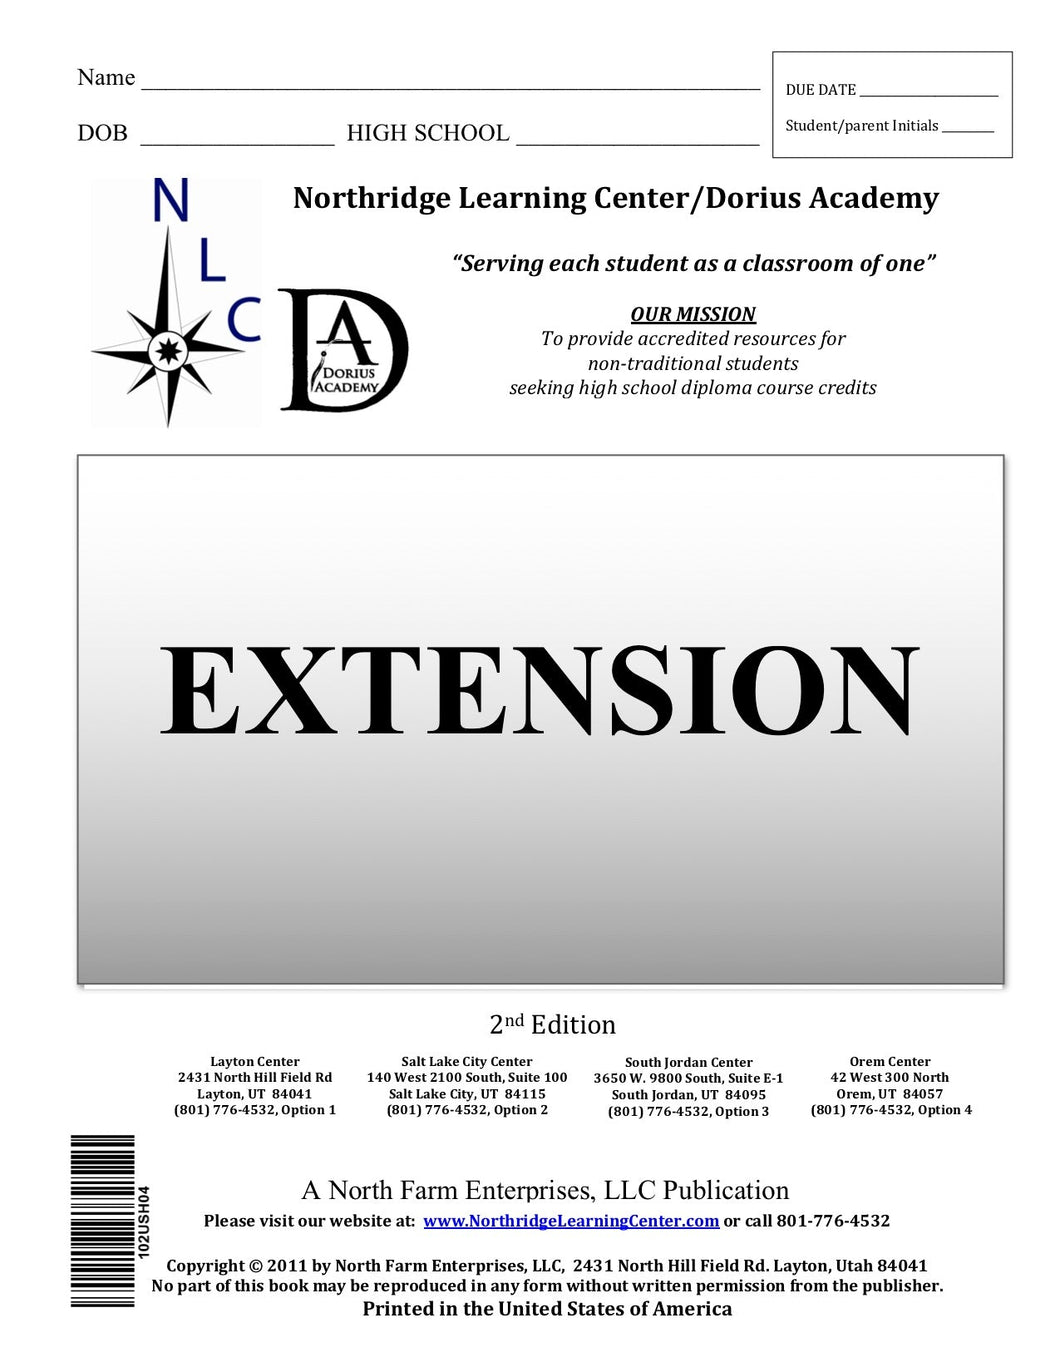 Algebra II, Section III - Extension